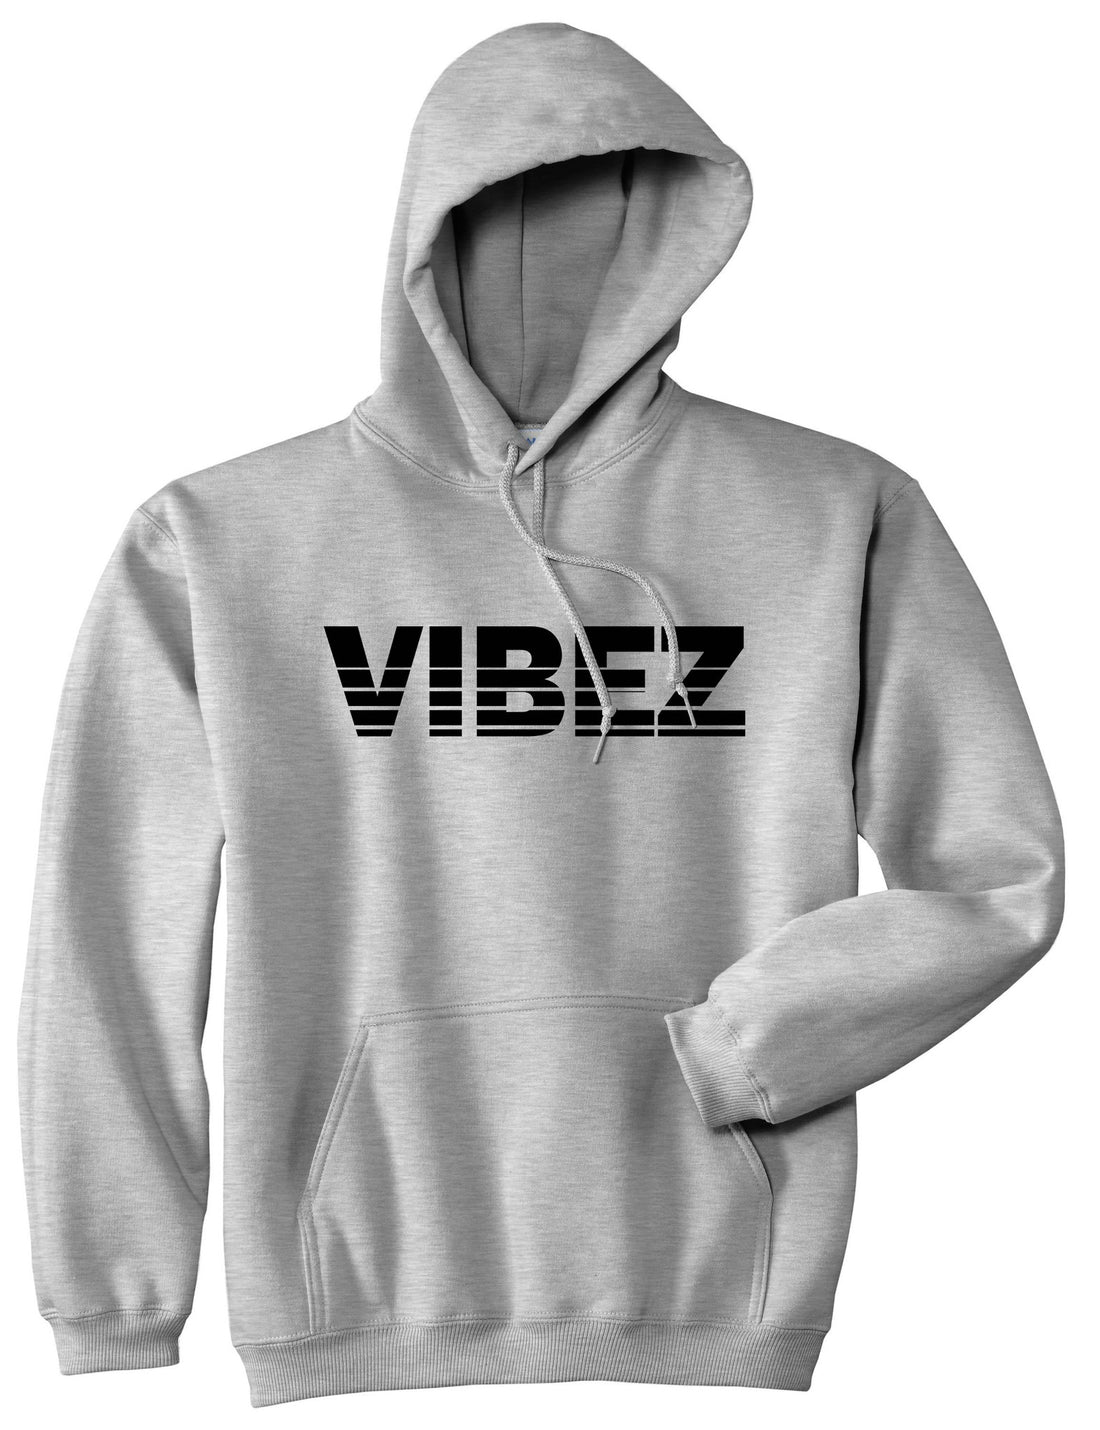 VIBEZ Racing Style Boys Kids Pullover Hoodie Hoody in Grey by Kings Of NY